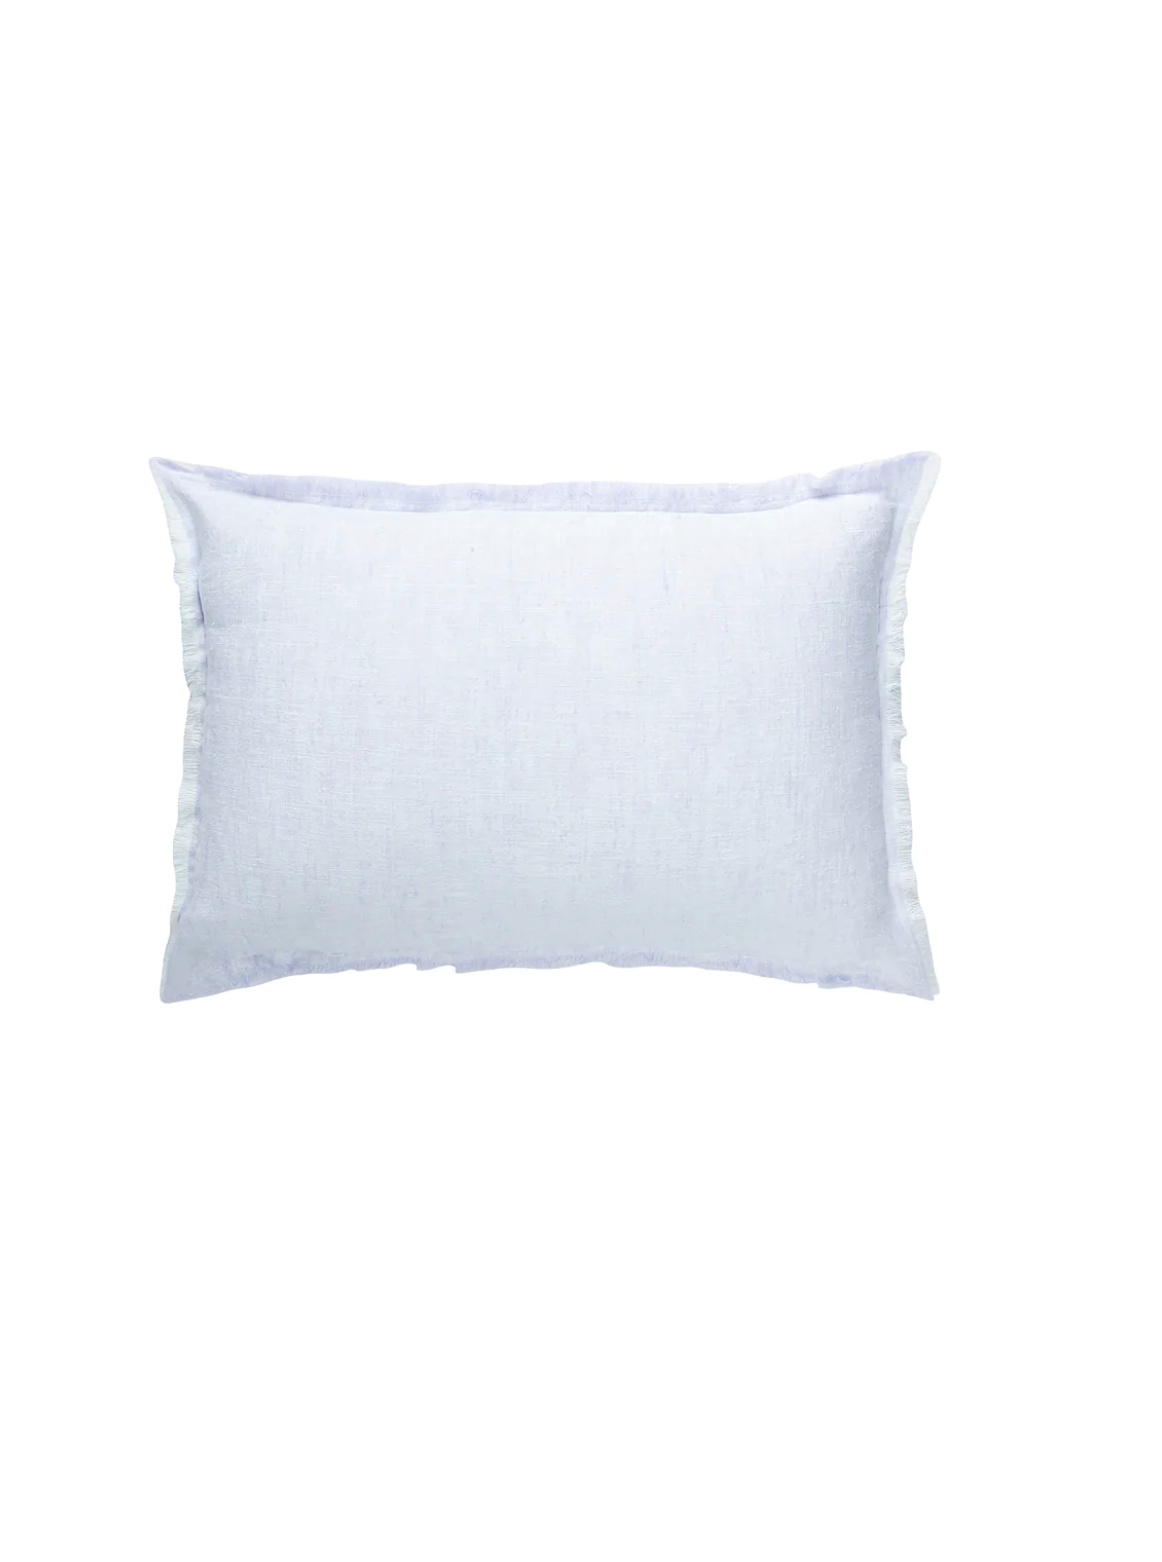 Sky Blue Linen Pillows